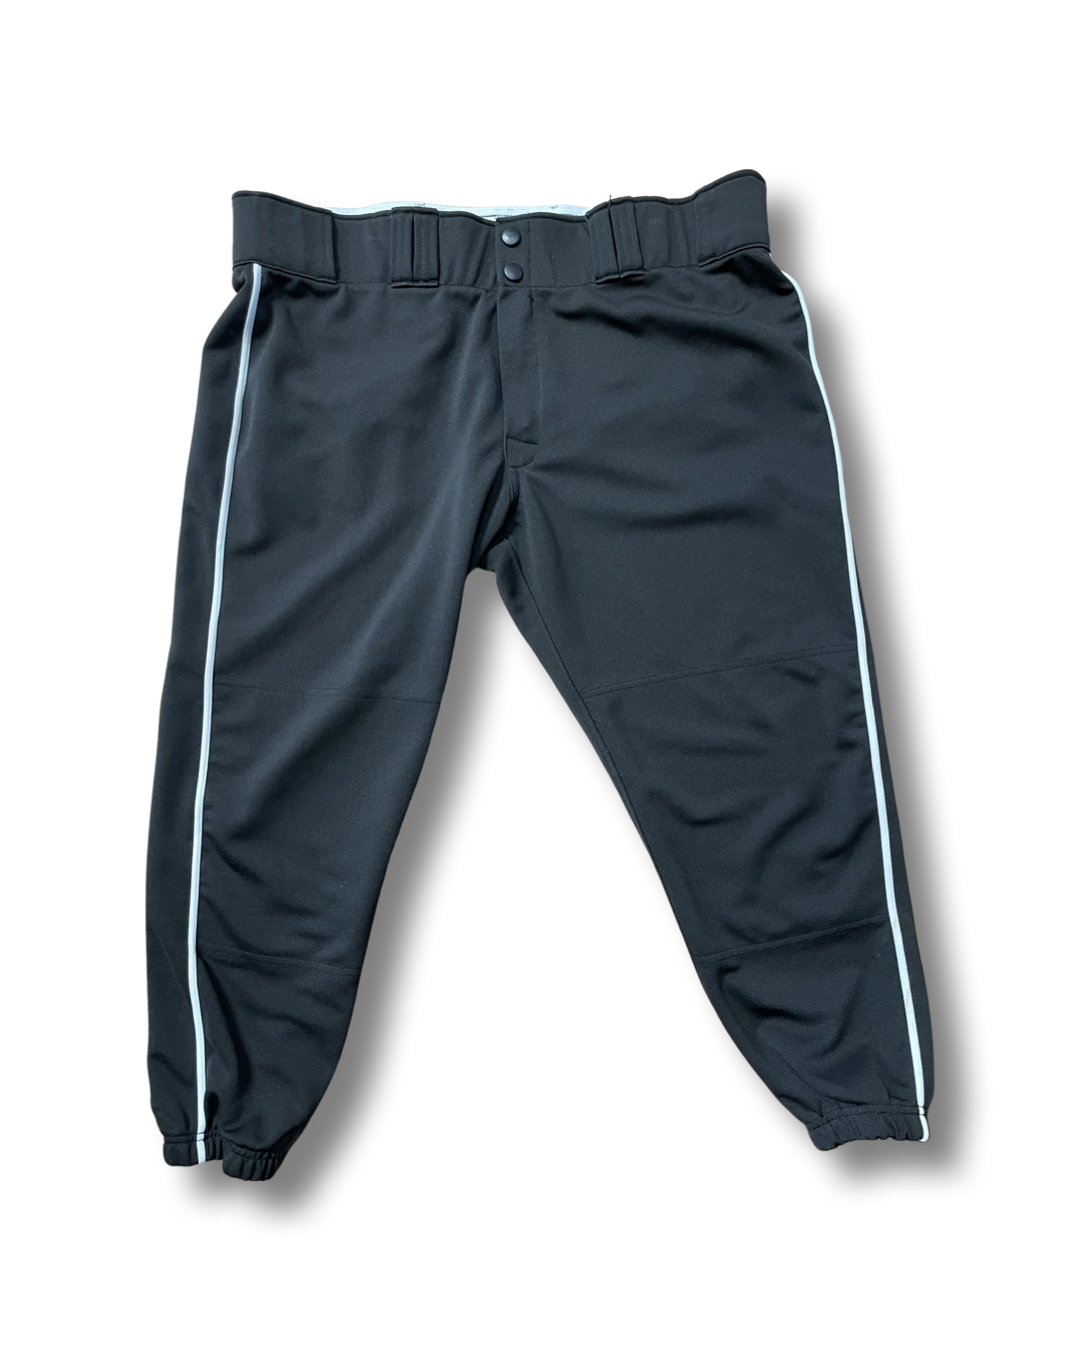 Black Easton Baseball Pants, Youth XL